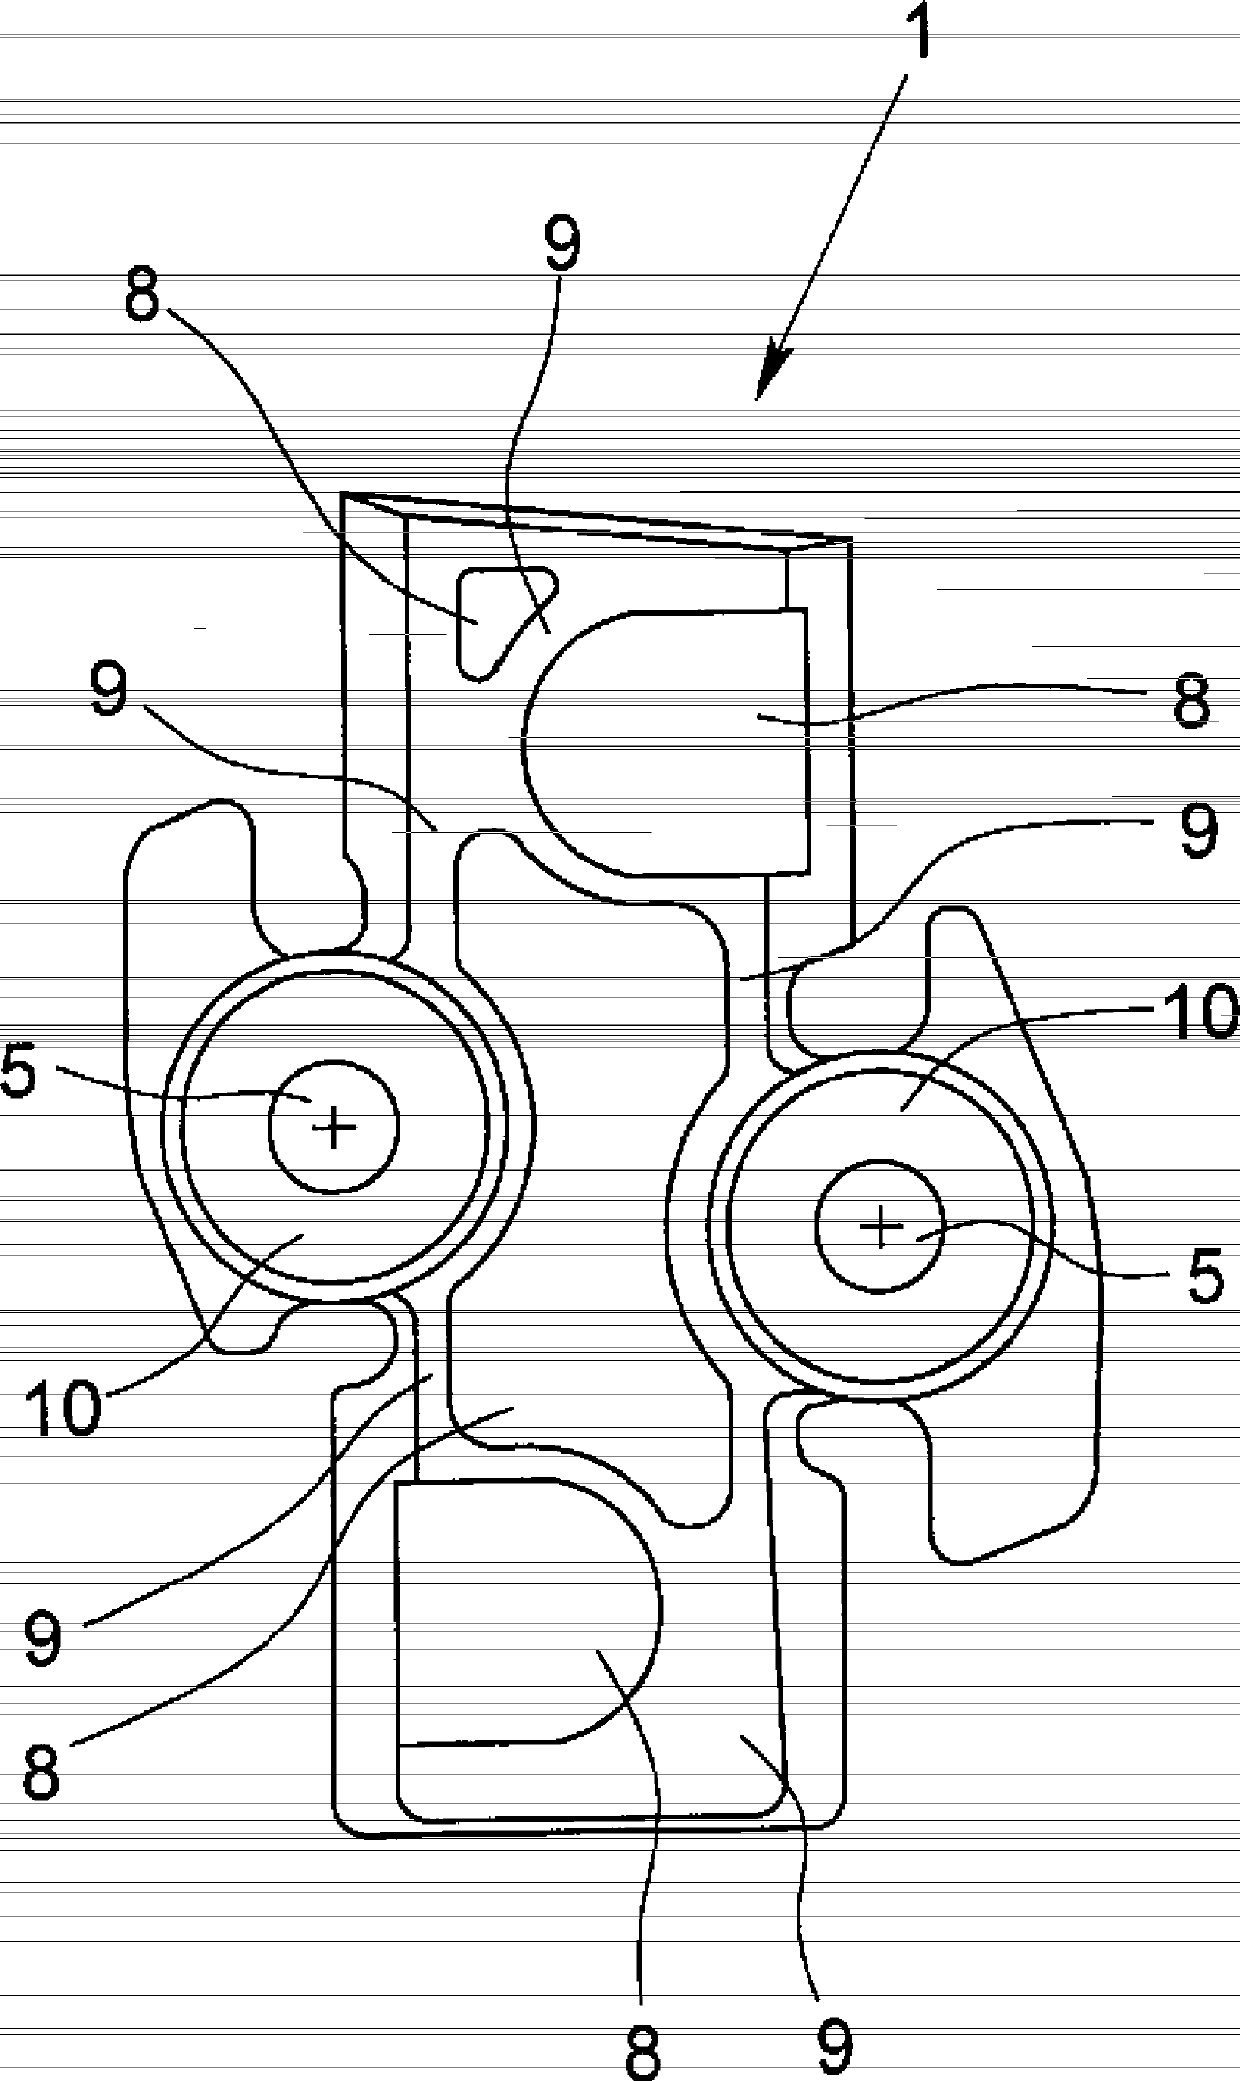 Brake lining for disc brake and brake lining system